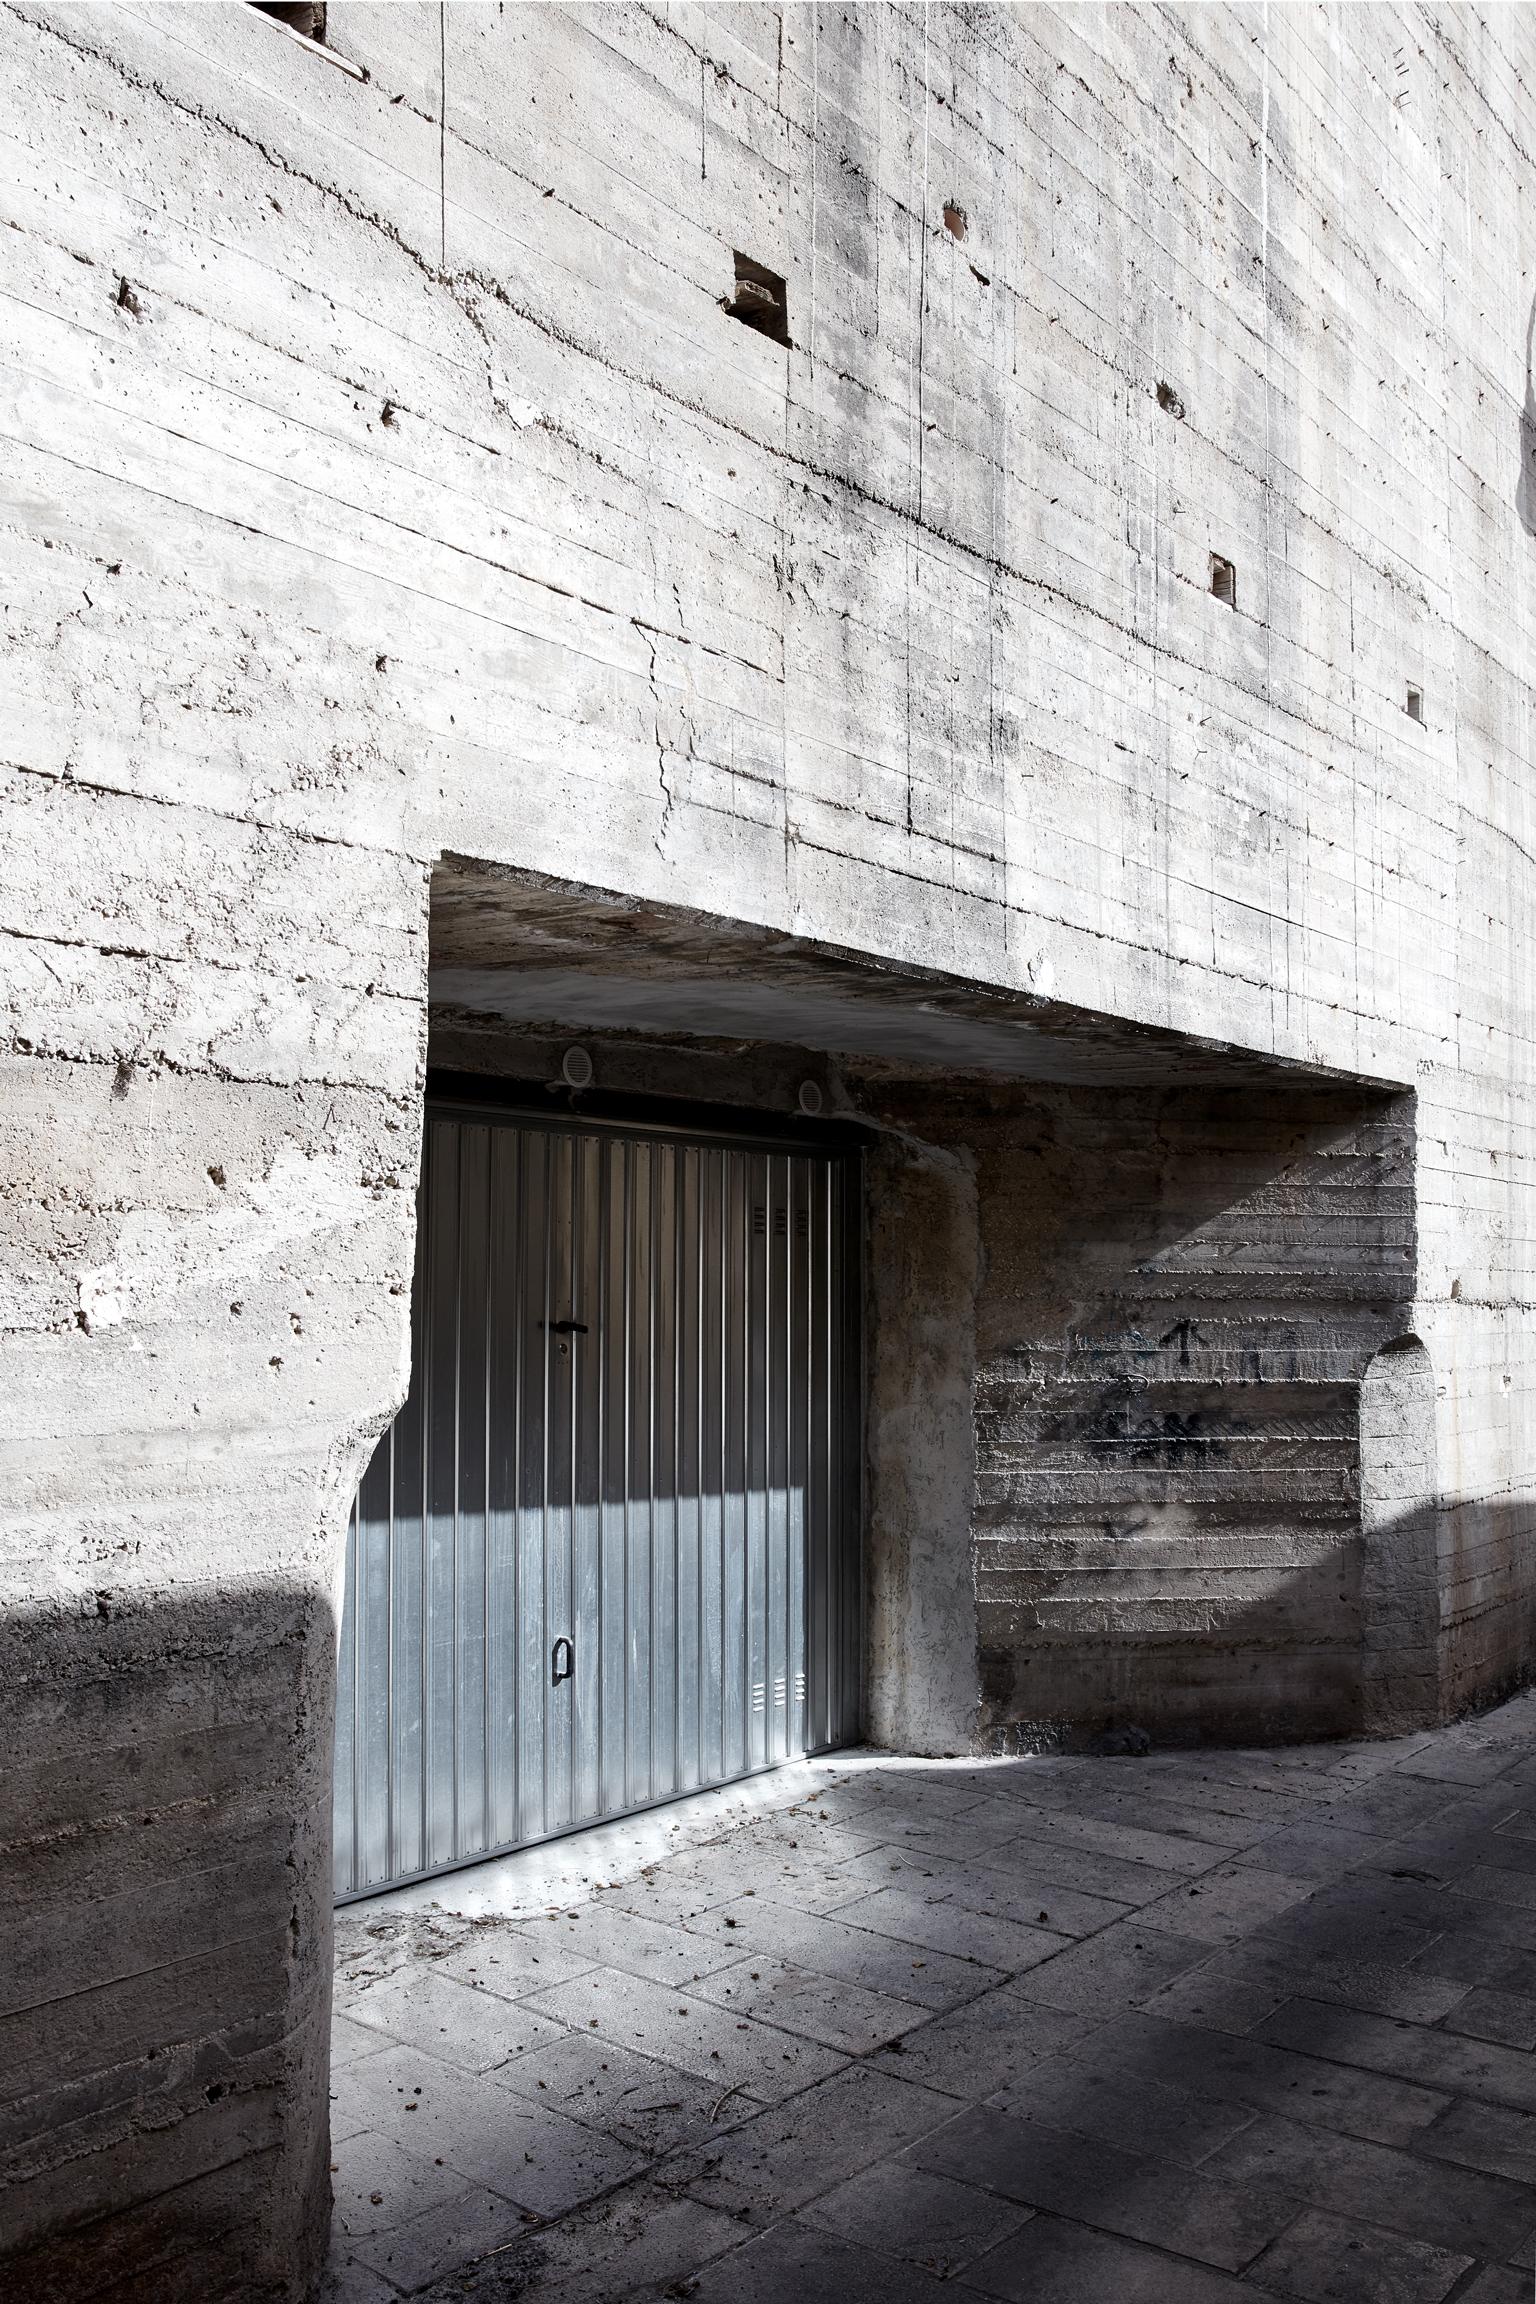 Modica – Großformatfotografie der brutalistischen Architektur – Print von Frank Schott